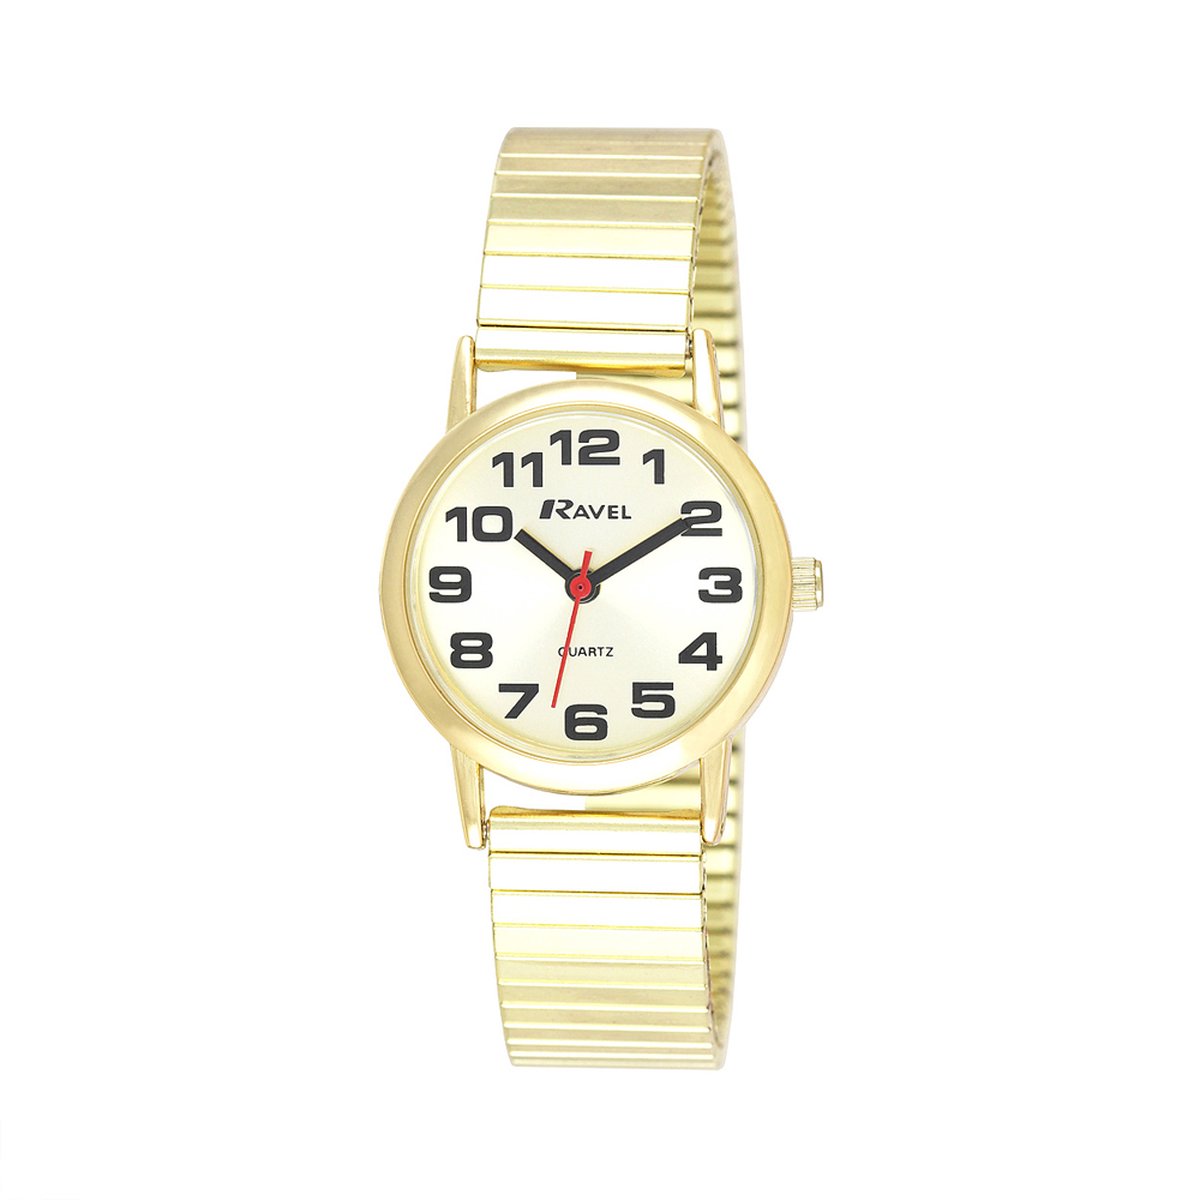 Ravel - dames gemakkelijk te lezen roestvrijstalen expander armband horloge met grote getallen (27mm horlogekast) - Analoge Kwarts - R0208.05.2S - goudkleurig / goude wijzerplaat